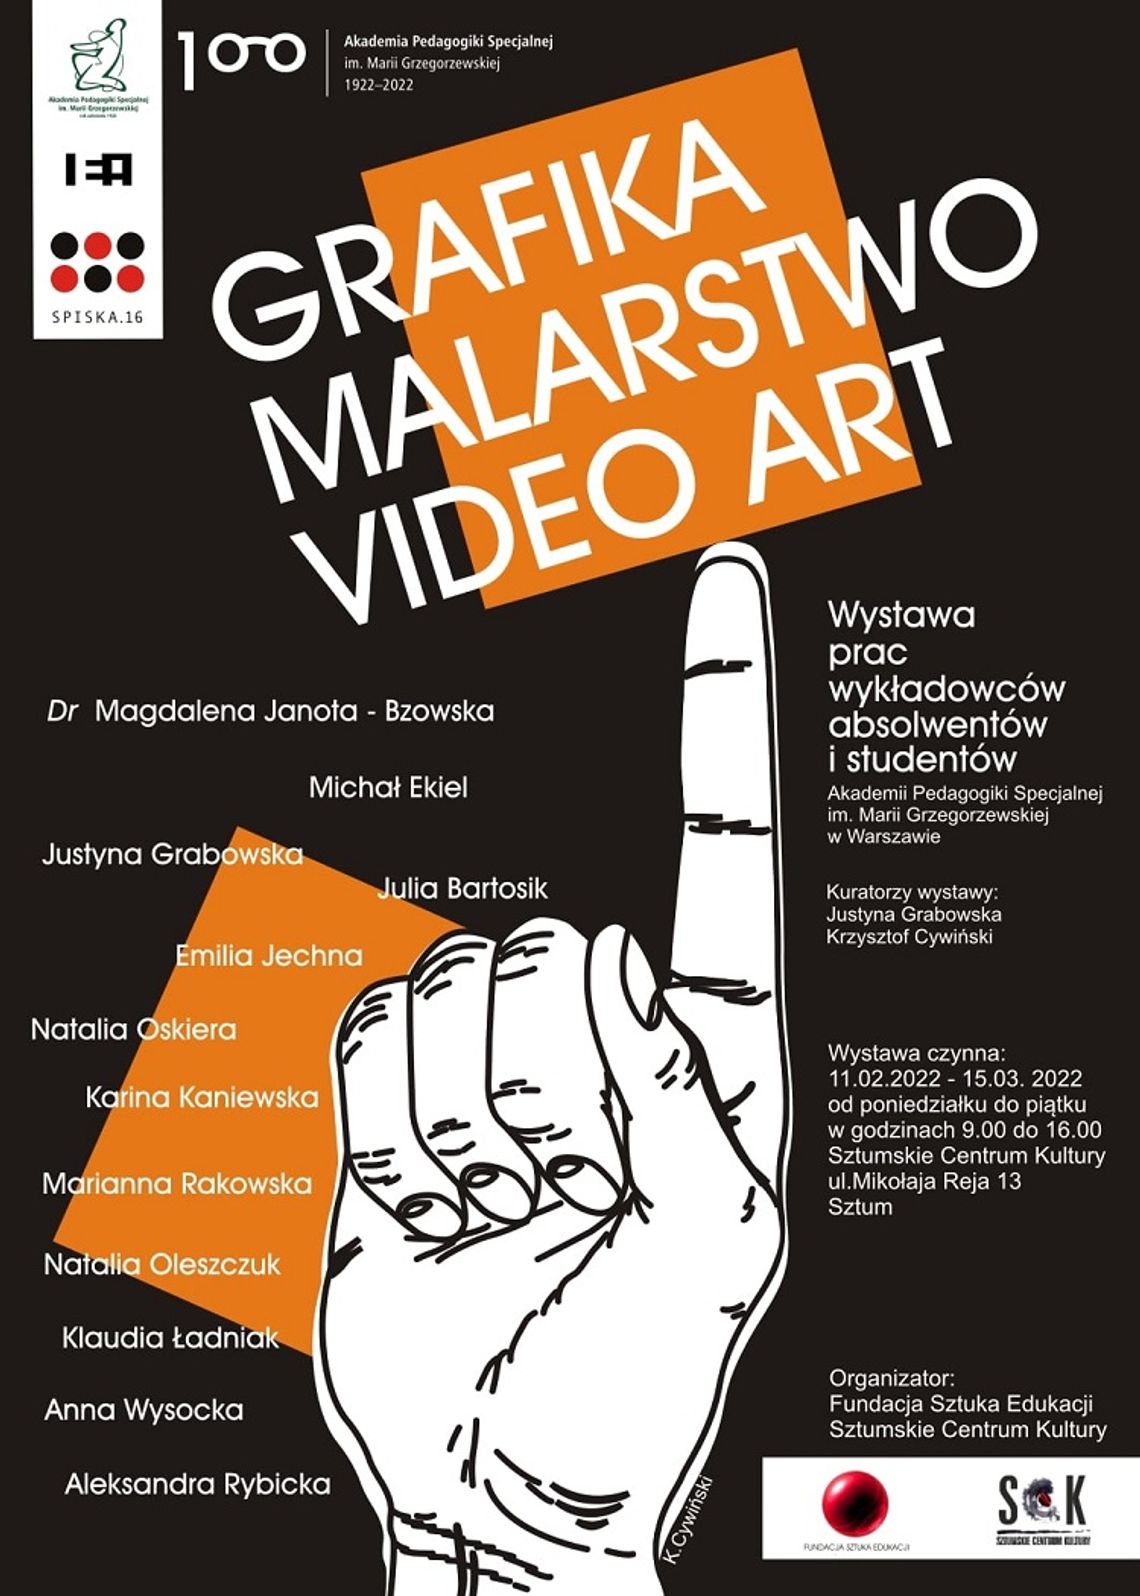 Grafika, malarstwo, video art - Sztumskie Centrum Kultury zaprasza na wernisaż wystawy.